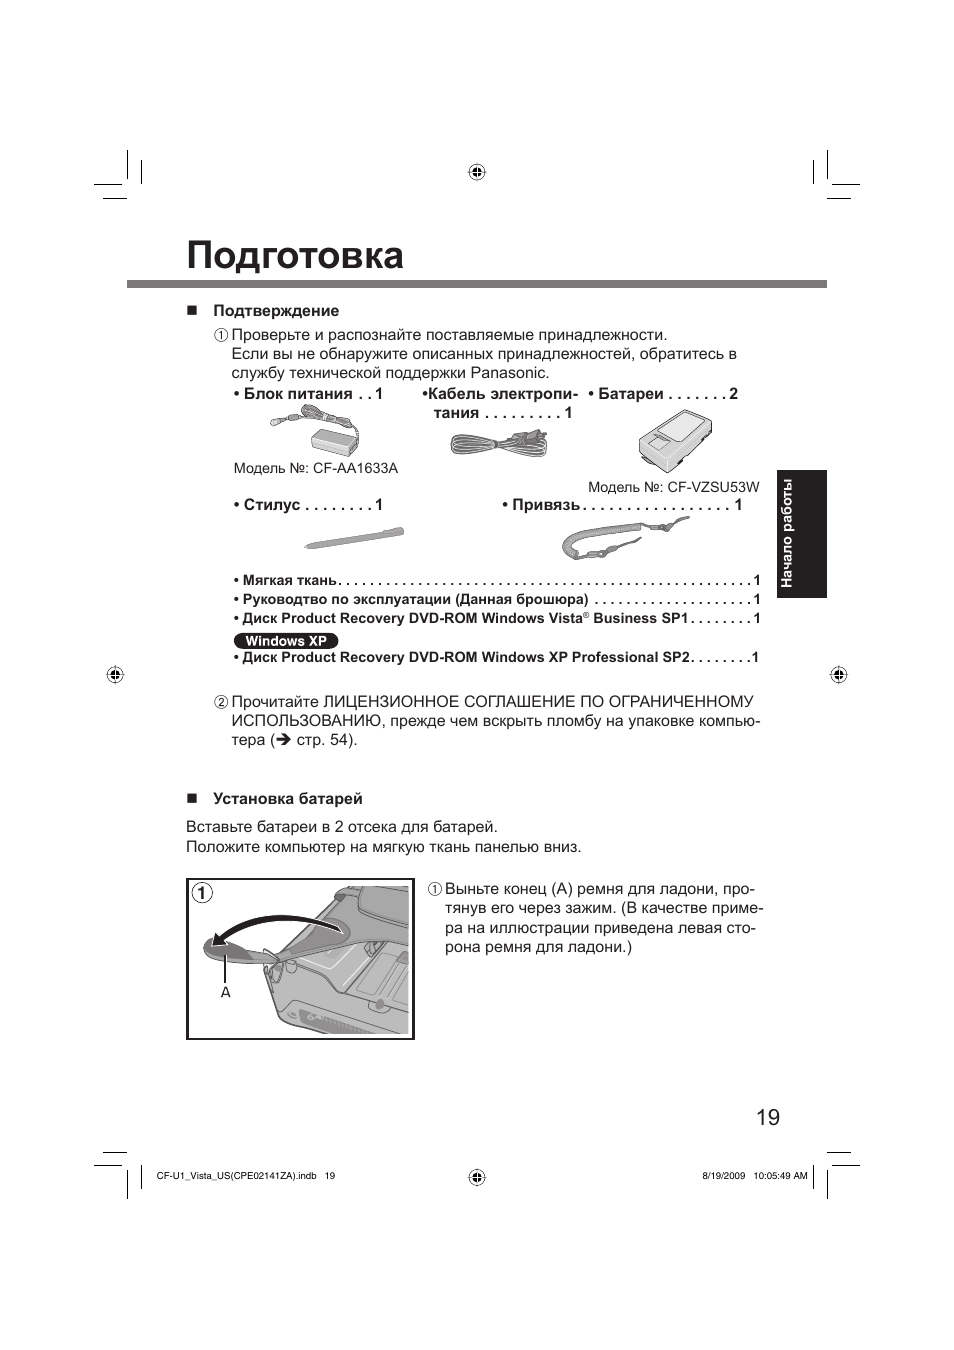 Подготовка | Инструкция по эксплуатации Panasonic CF-U1 | Страница 19 / 60